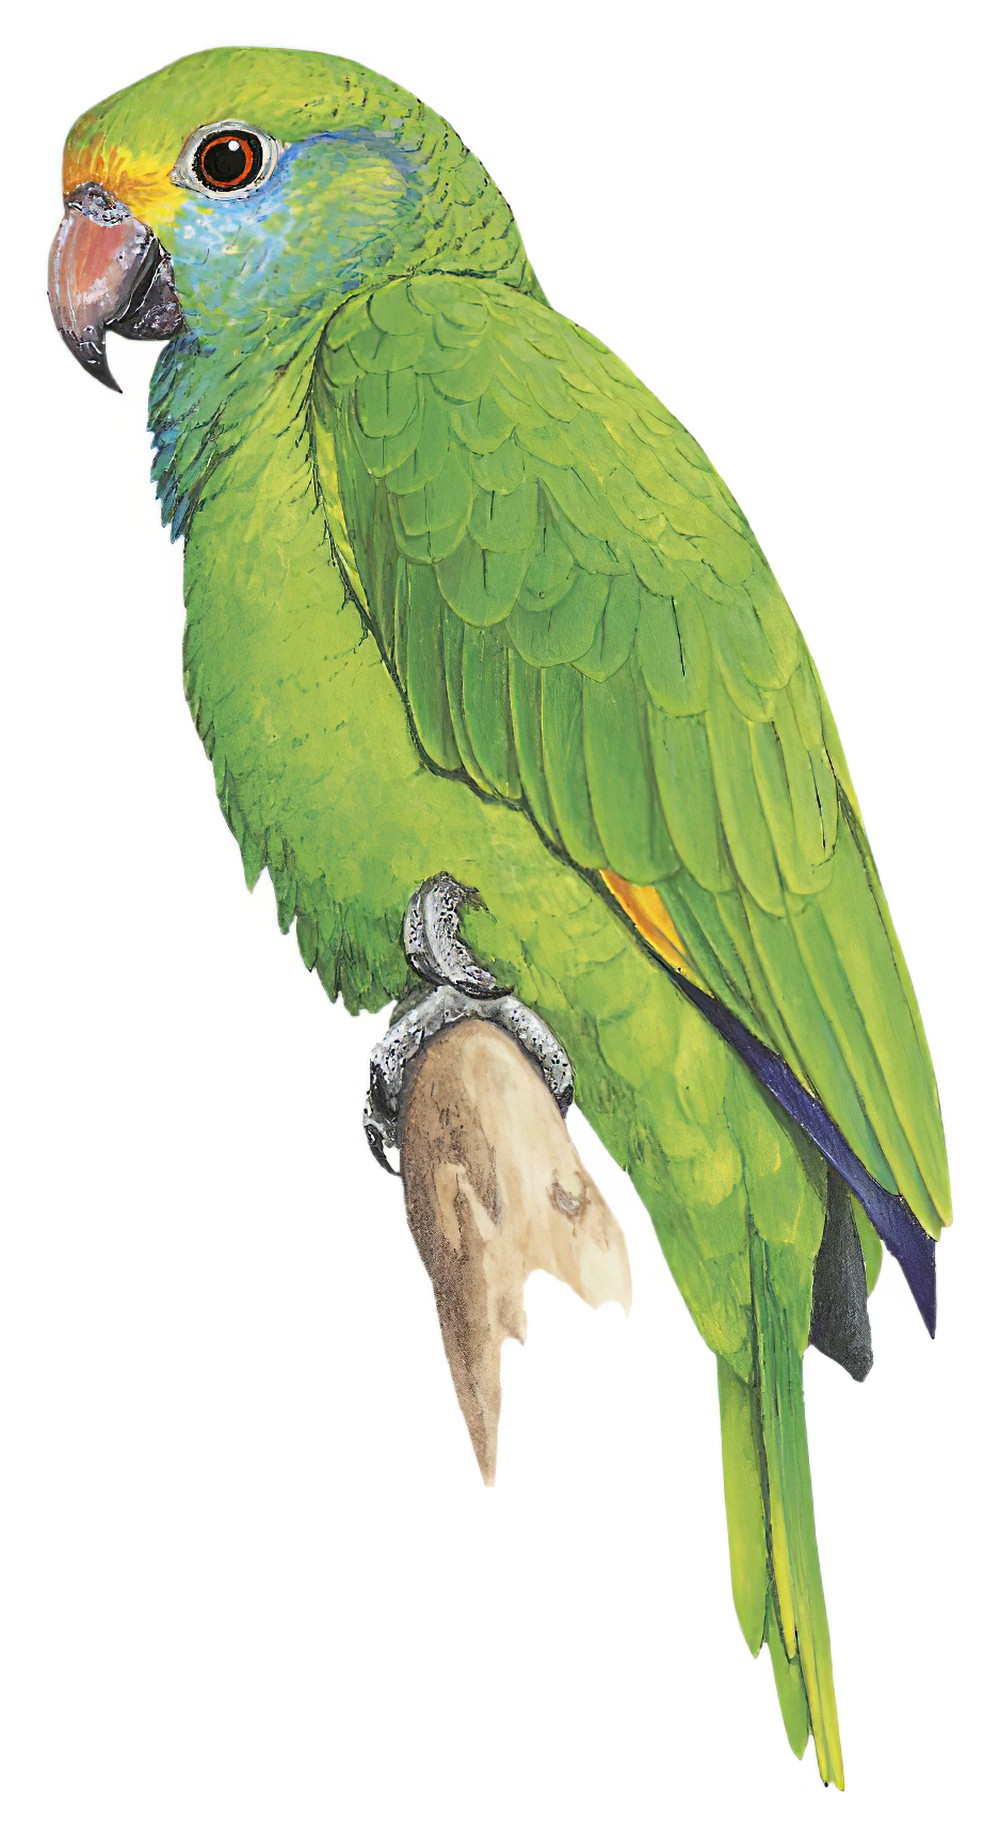 Blue-cheeked Parrot / Amazona dufresniana